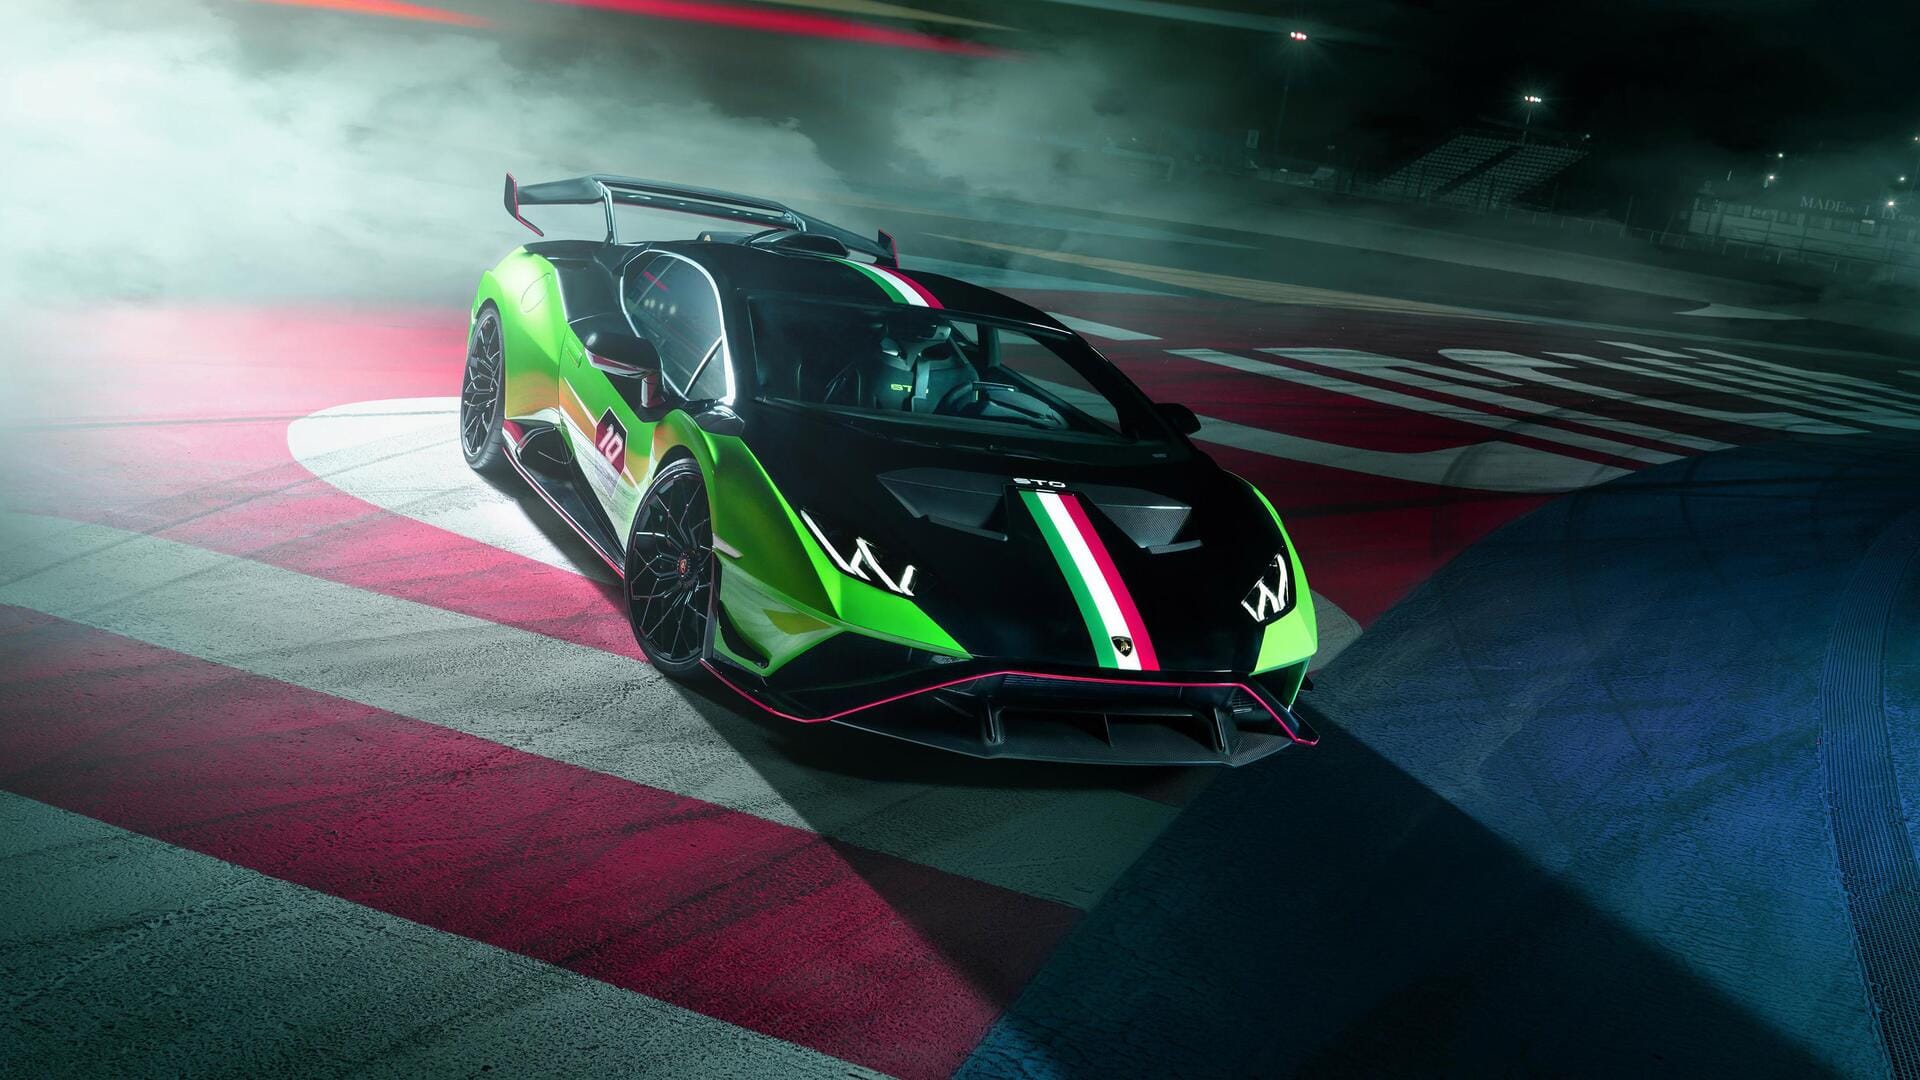 Lamborghini unveils one-off Huracan STO SC 10° Anniversario: Check features